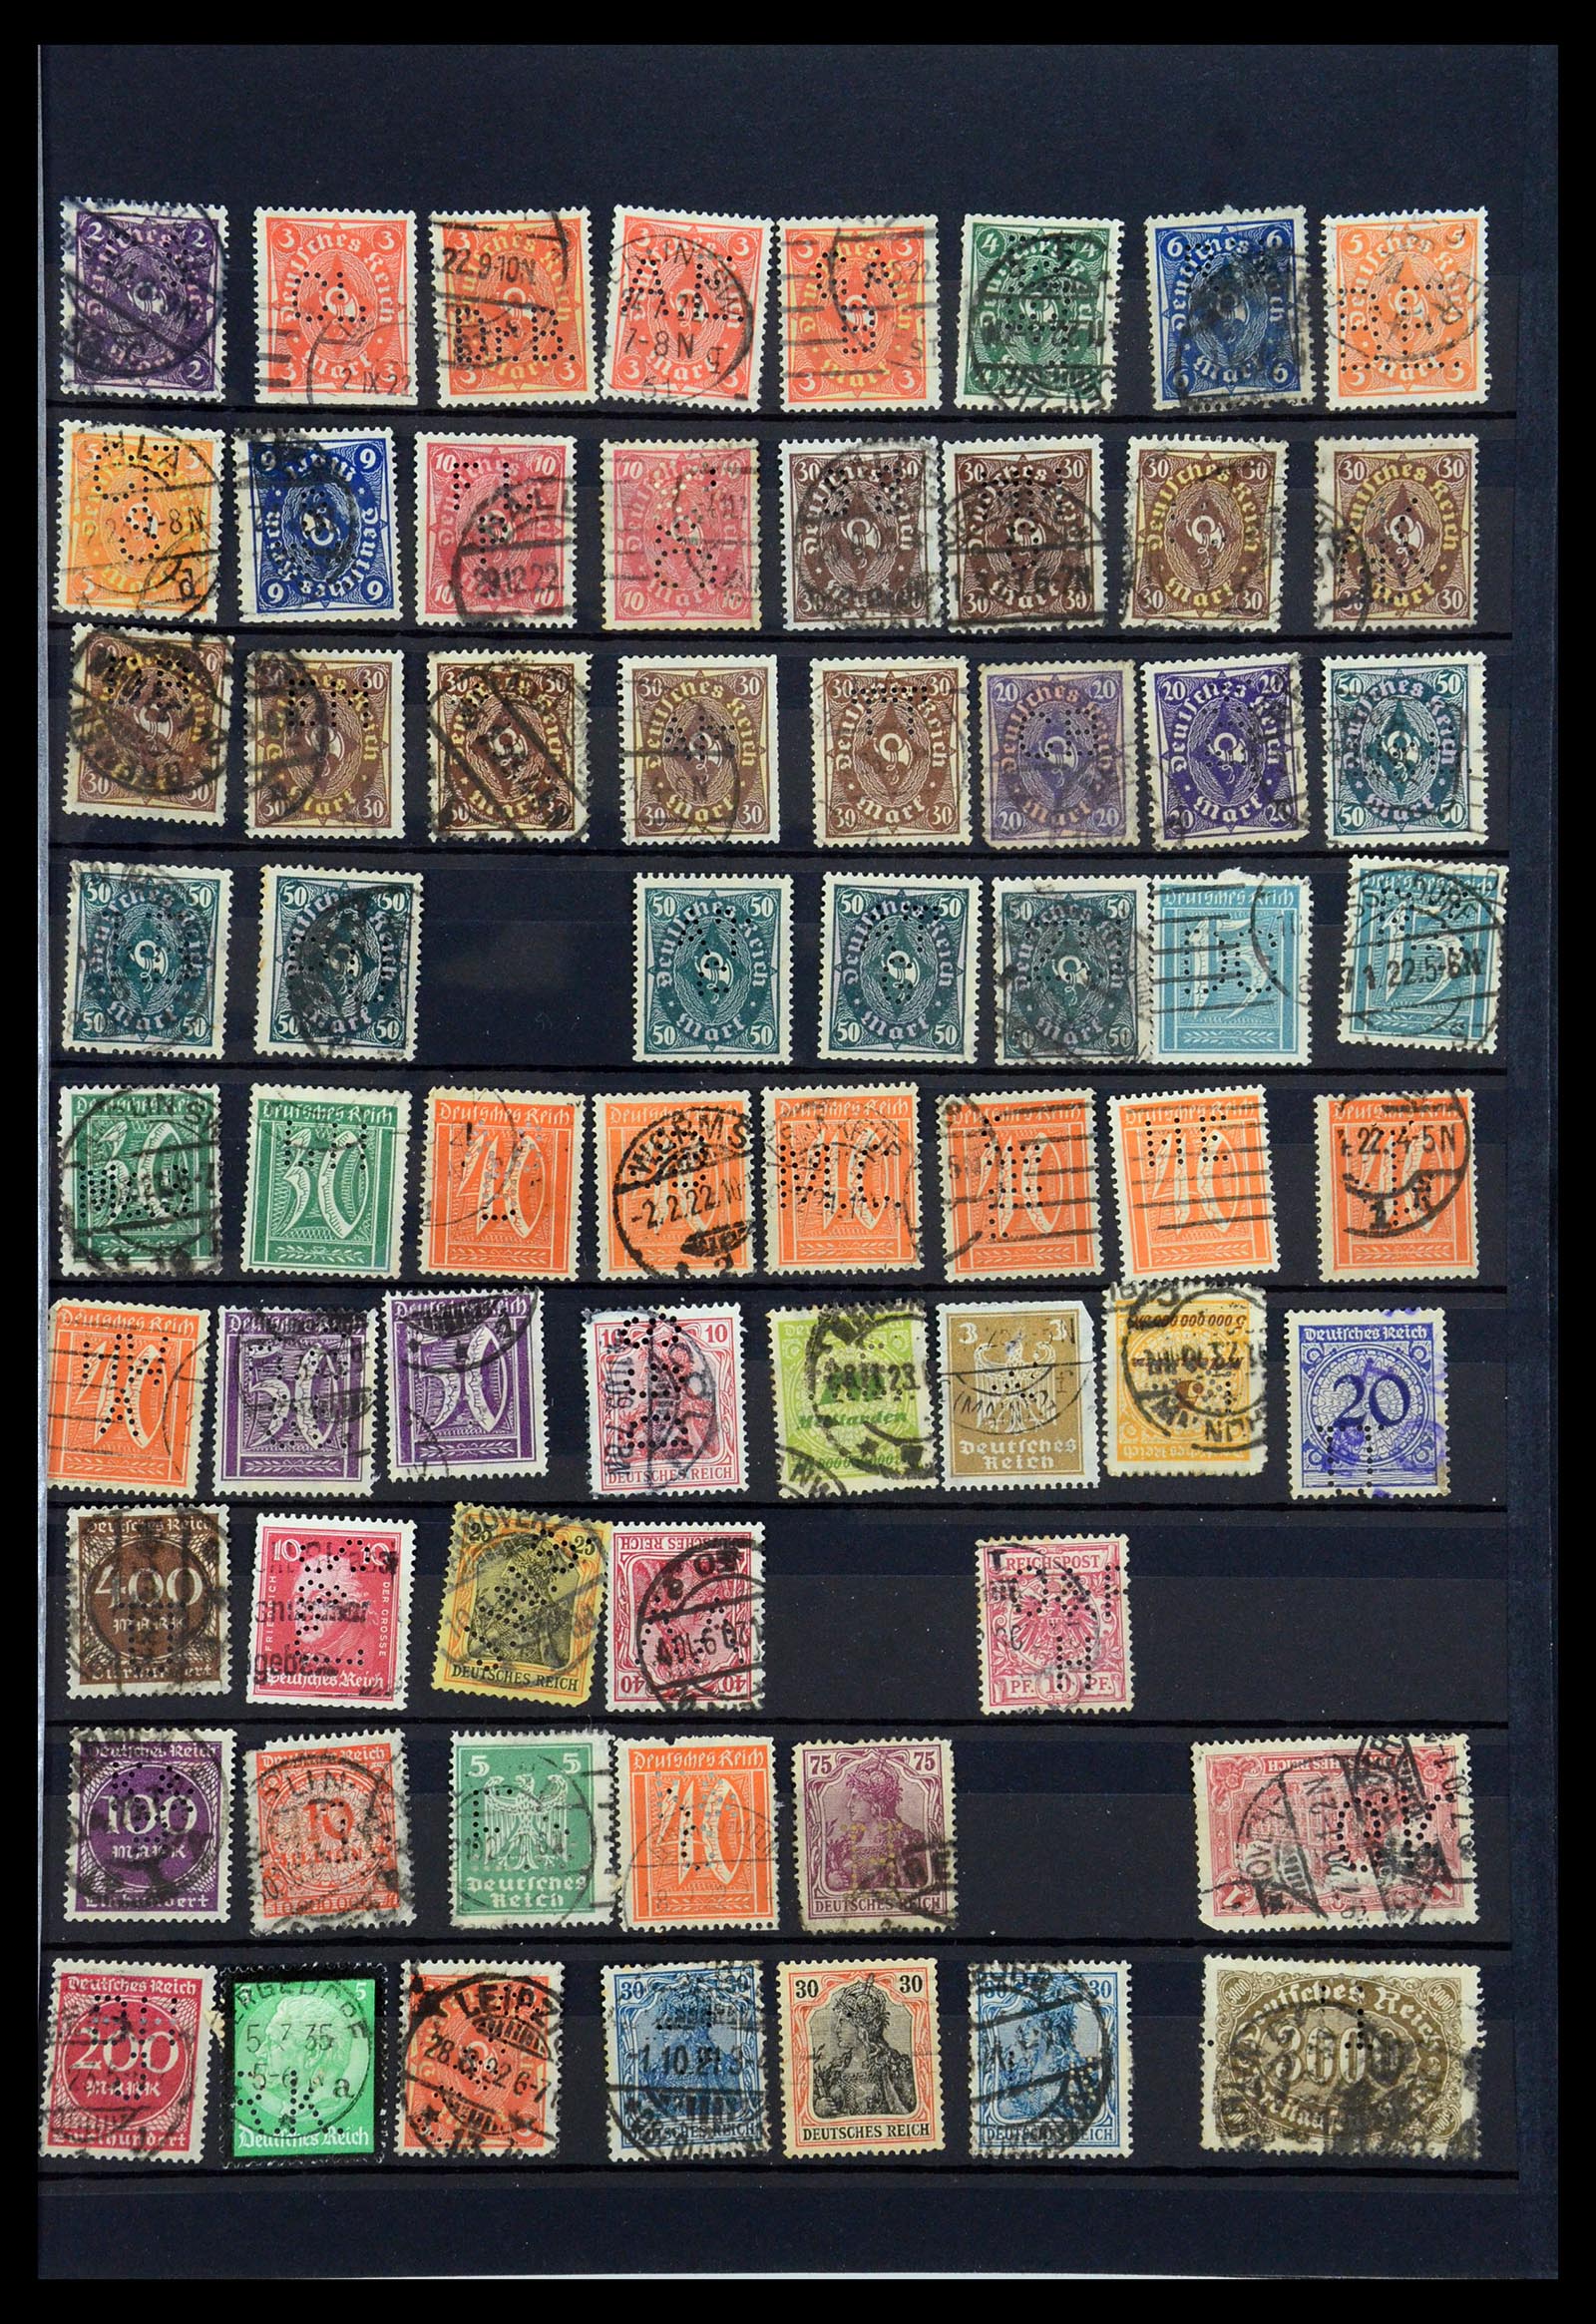 35183 025 - Stamp Collection 35183 German Reich perfins 1880-1945.